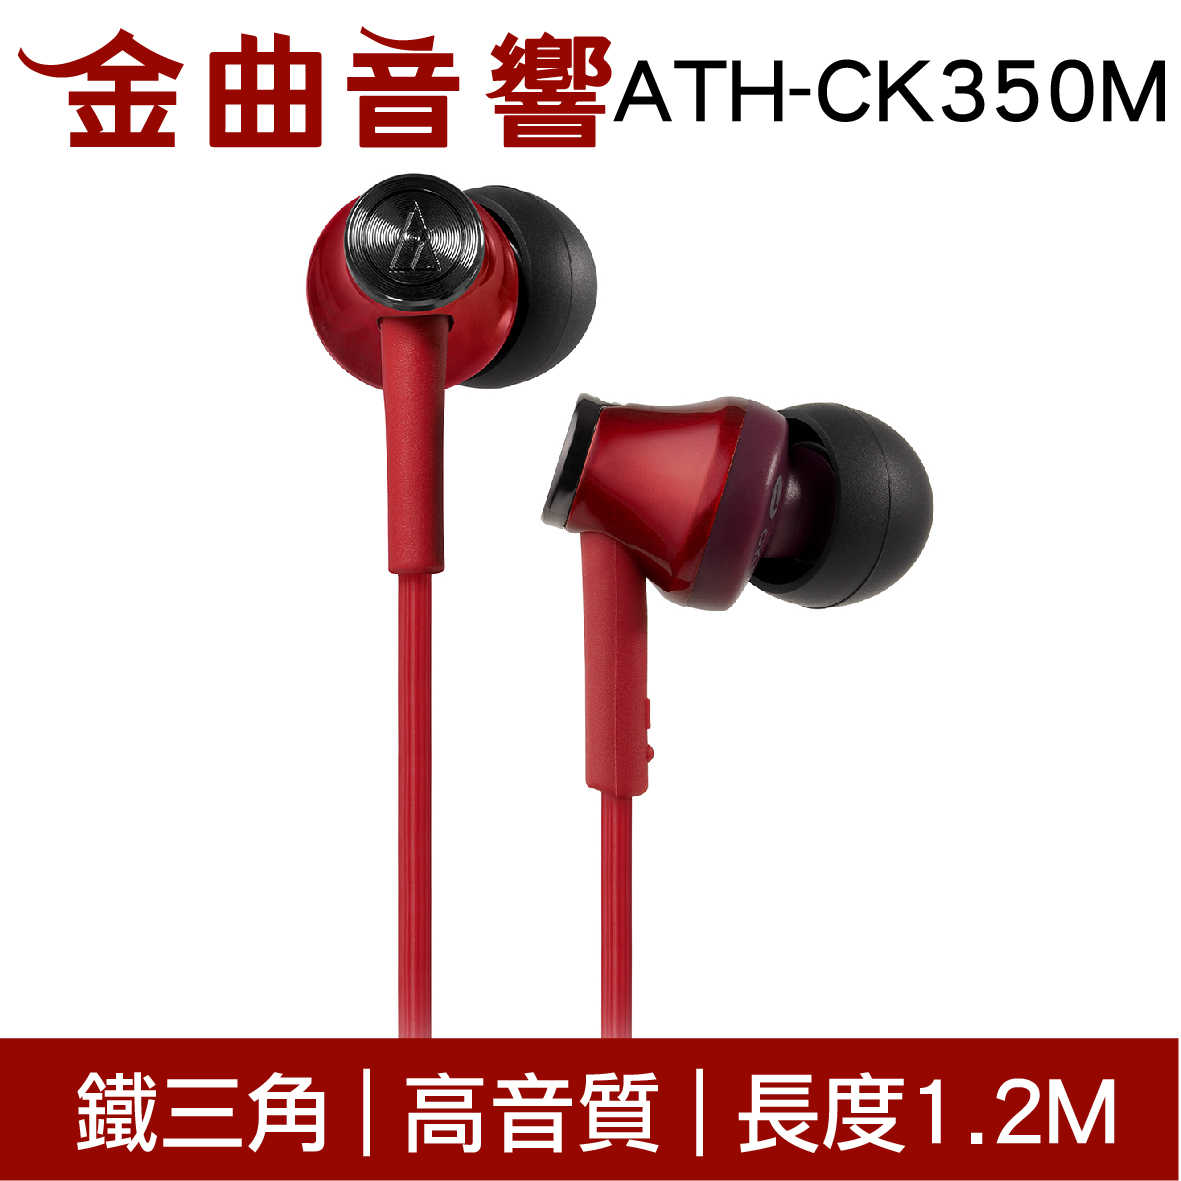 鐵三角 ATH-CK350M 淺藍色 高音質耳道式耳機 | 金曲音響